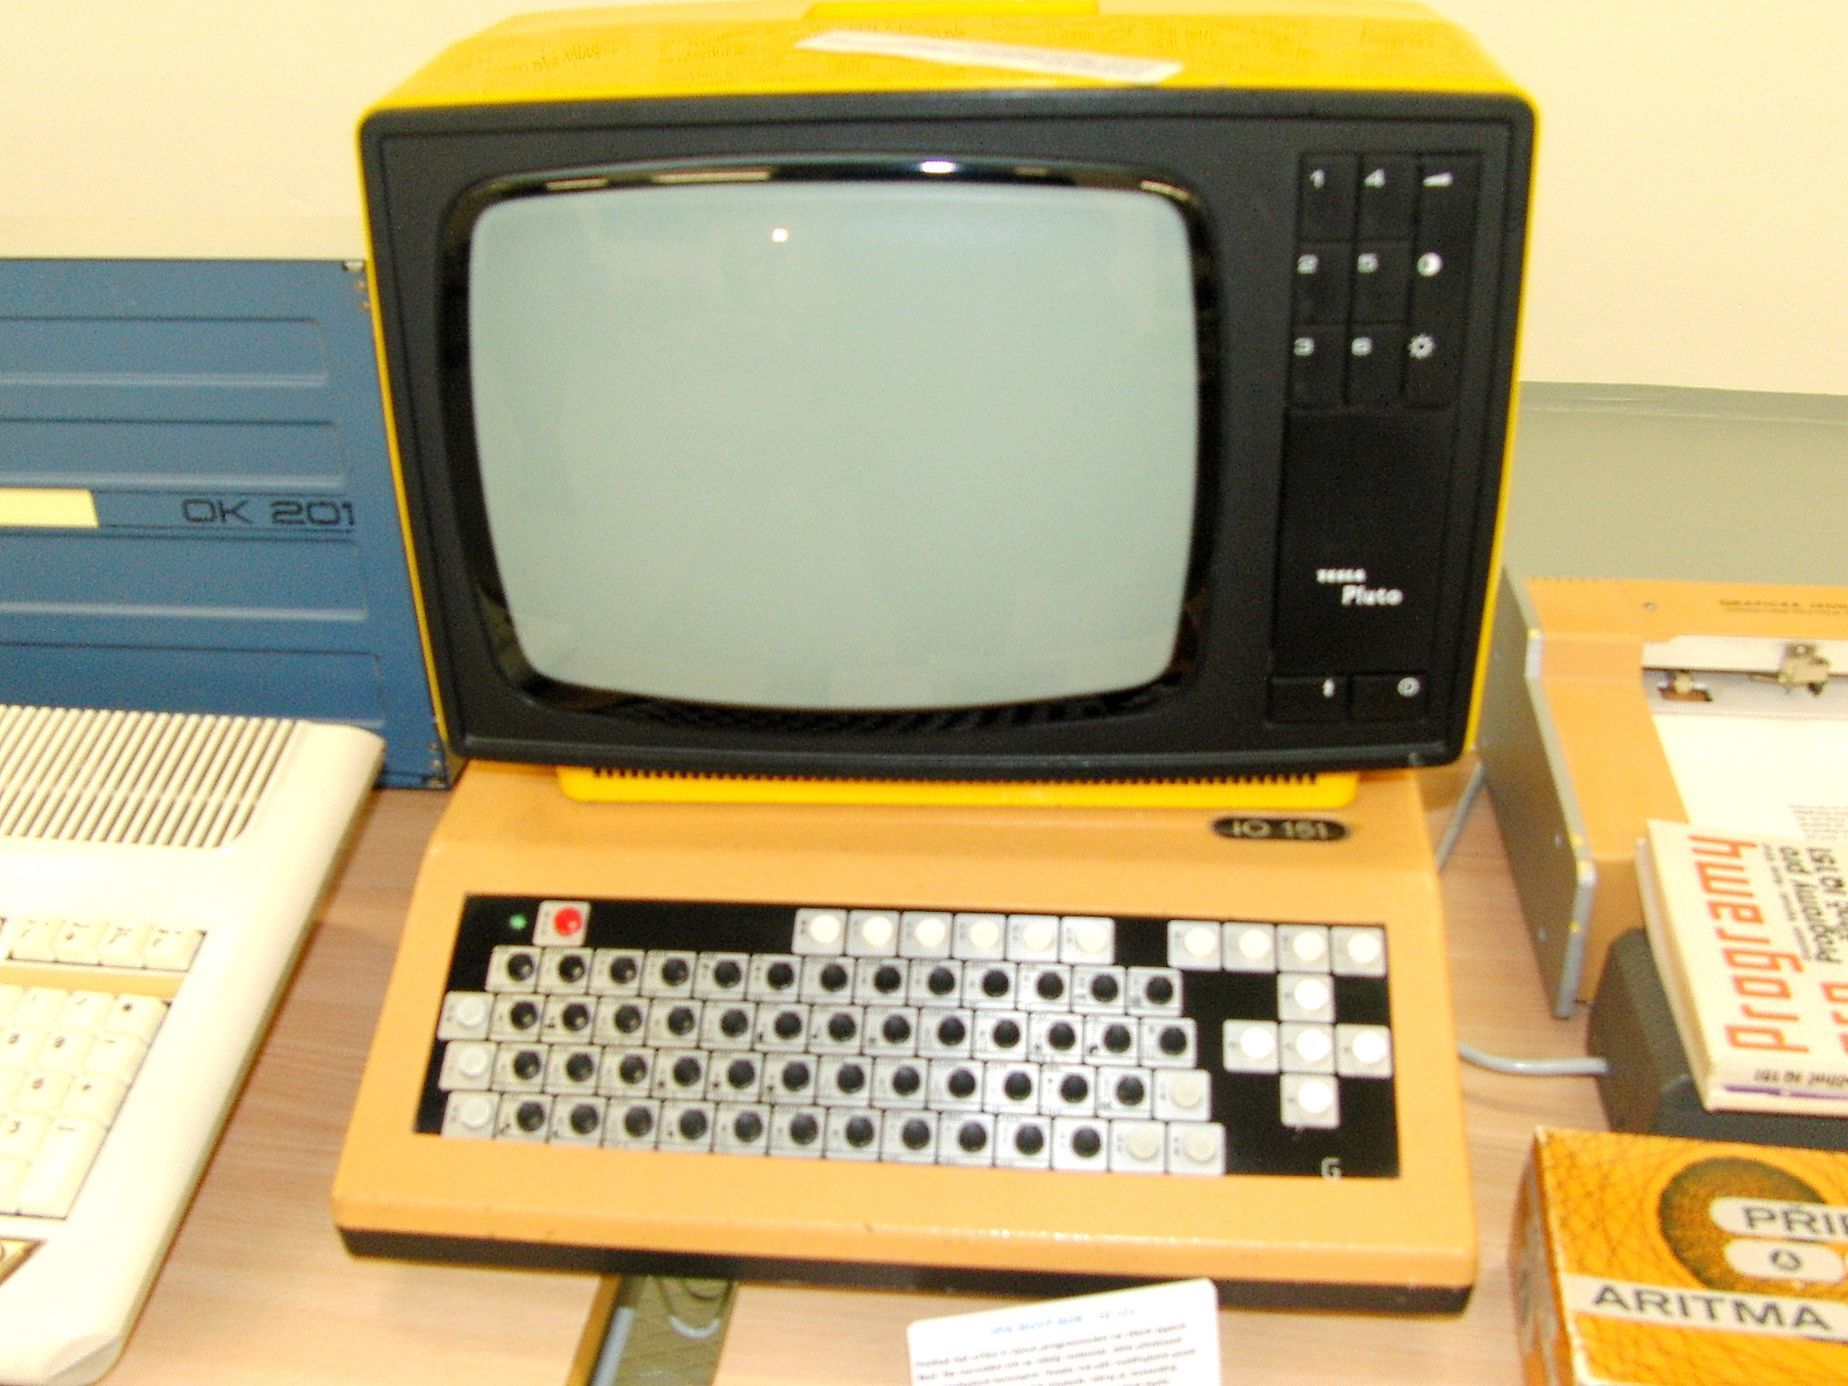 Staré počítače, konzole - retro